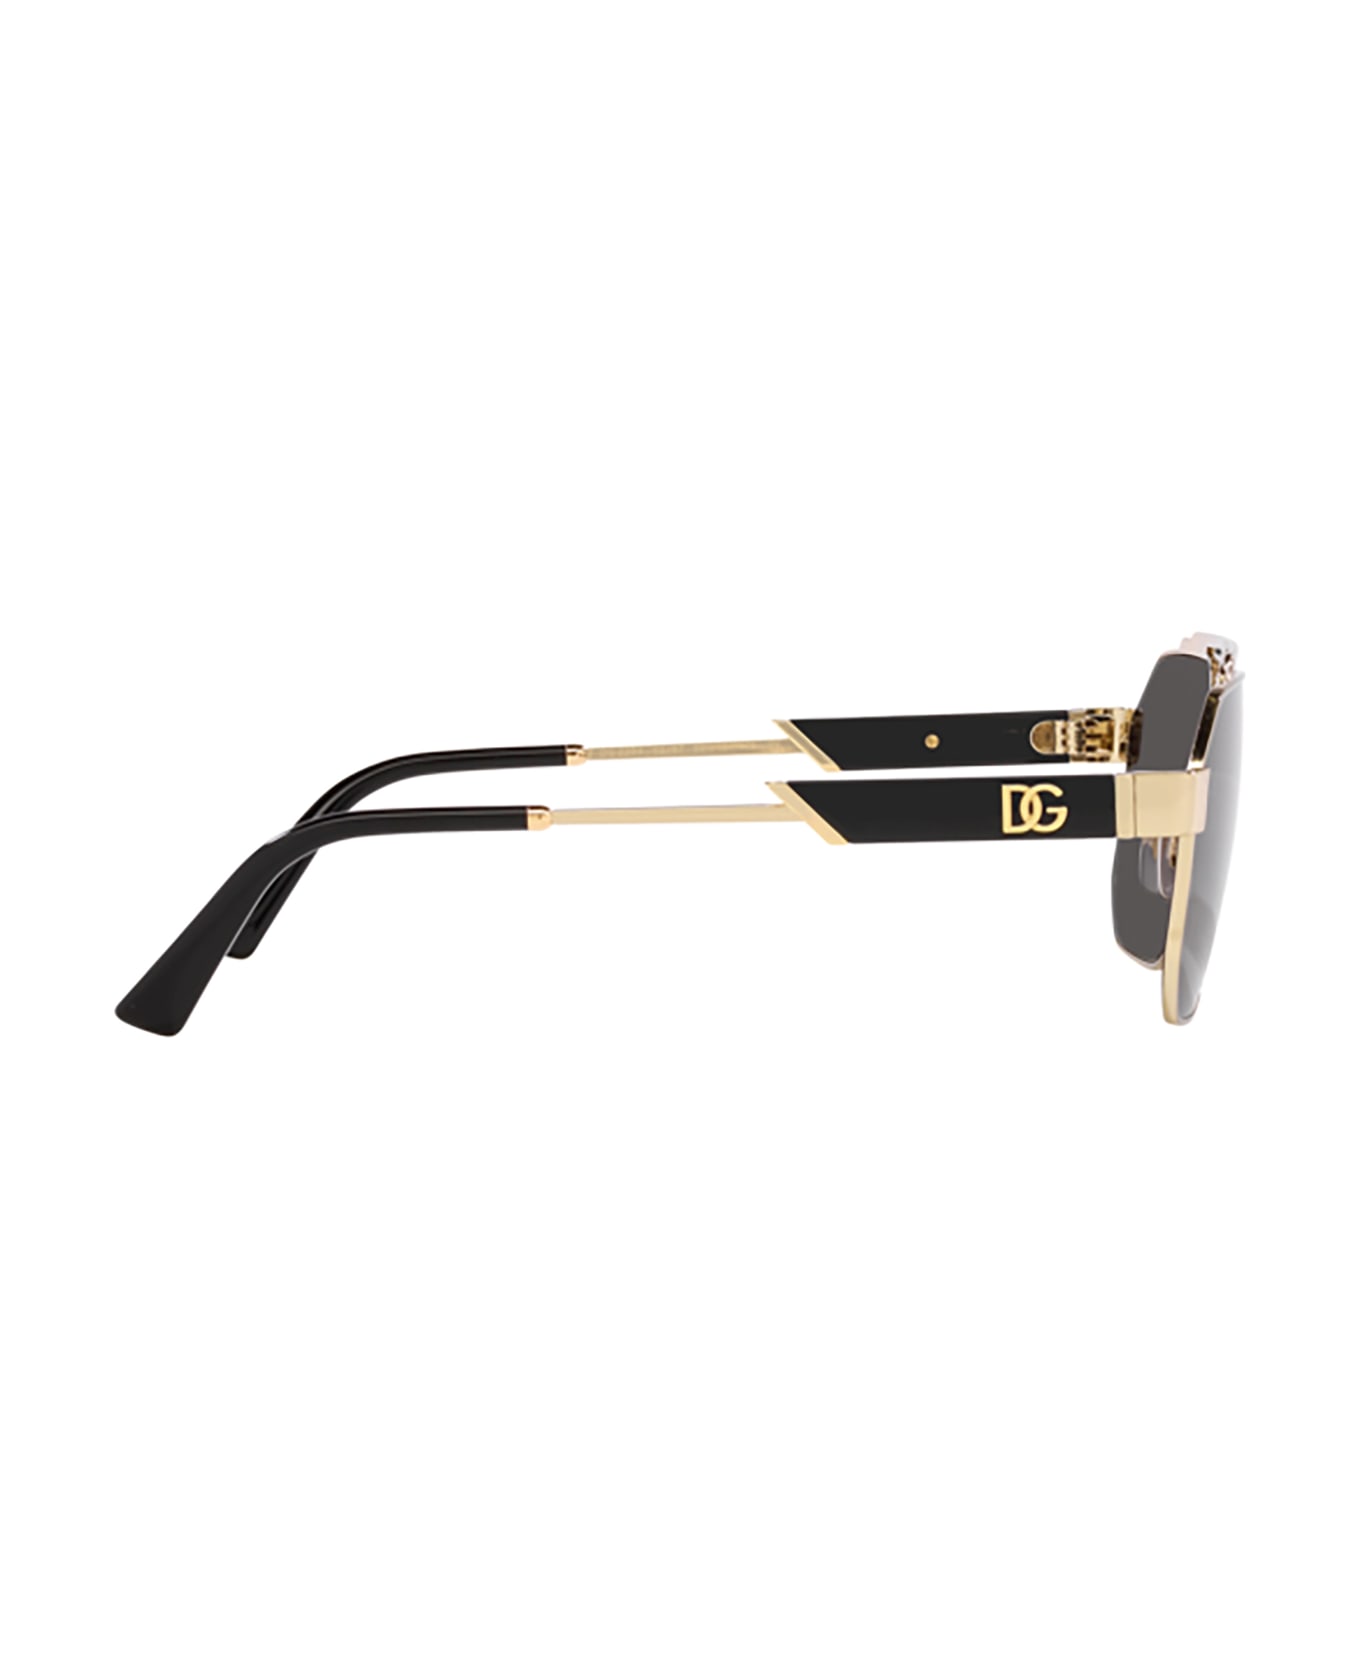 Dolce & Gabbana Eyewear Dg2294 Gold Sunglasses - Gold